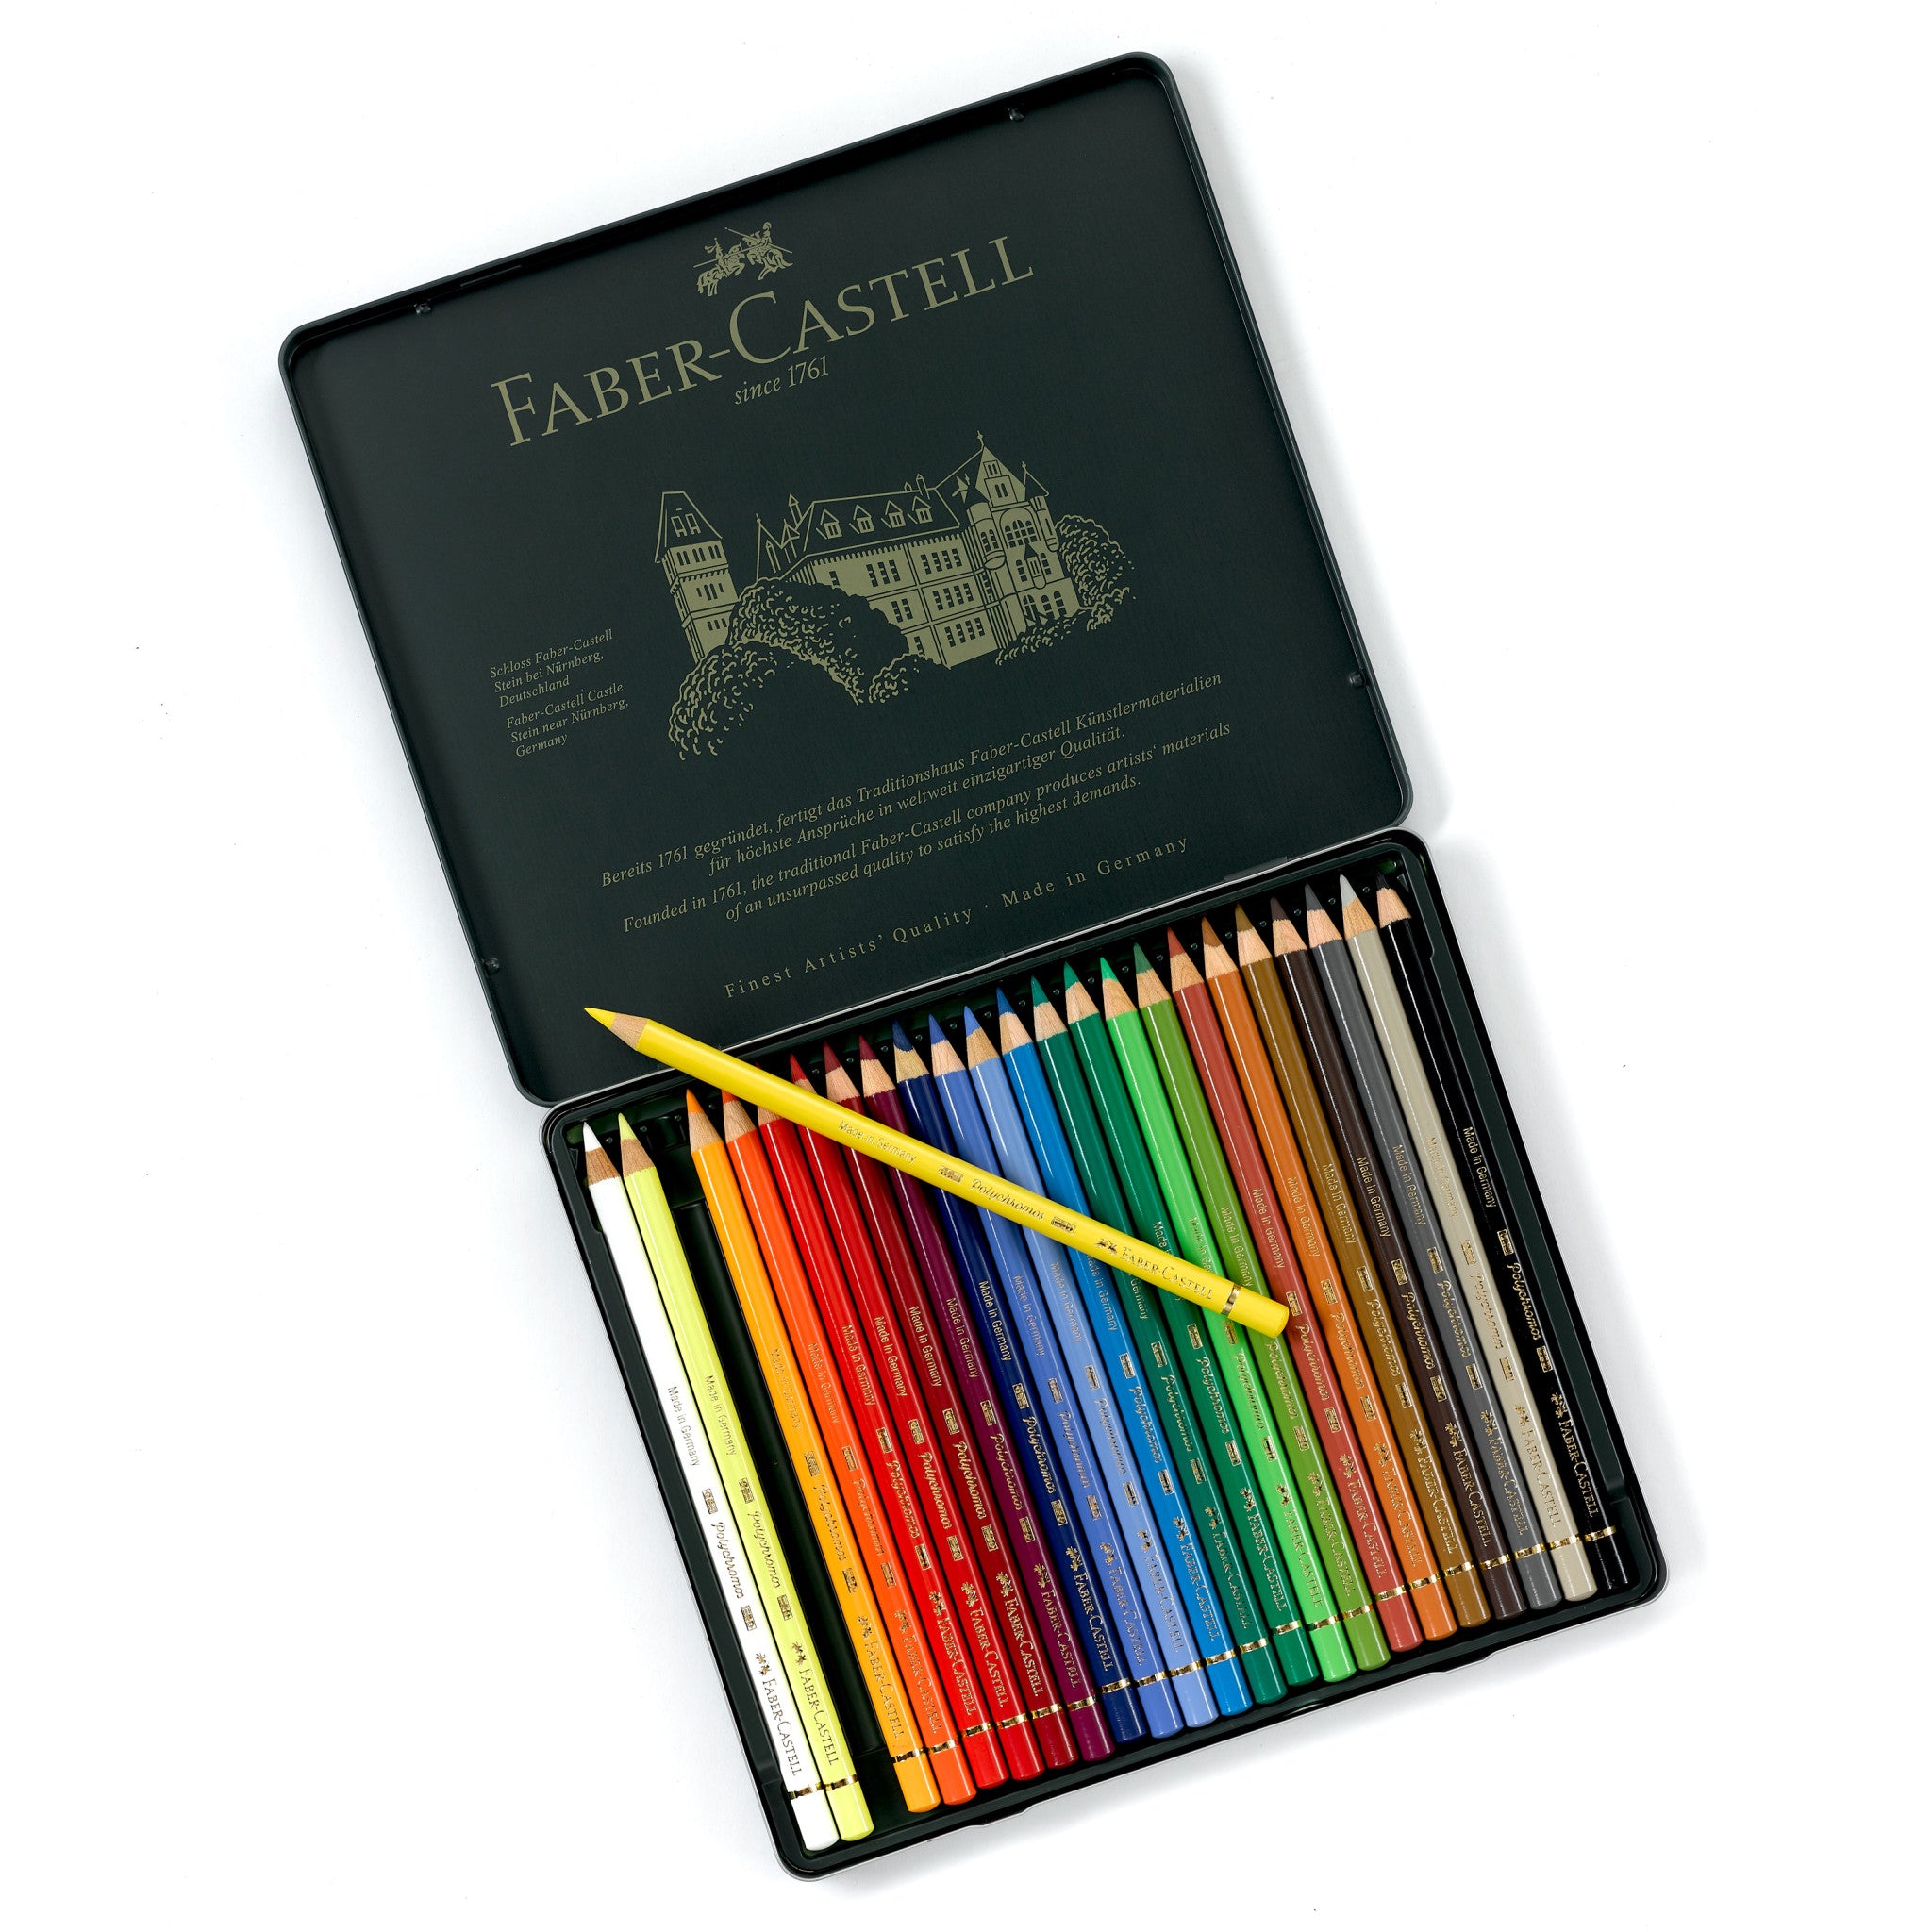 Faber-Castell Polychromos Colour Pencil 24 Tin I Pencils I Art